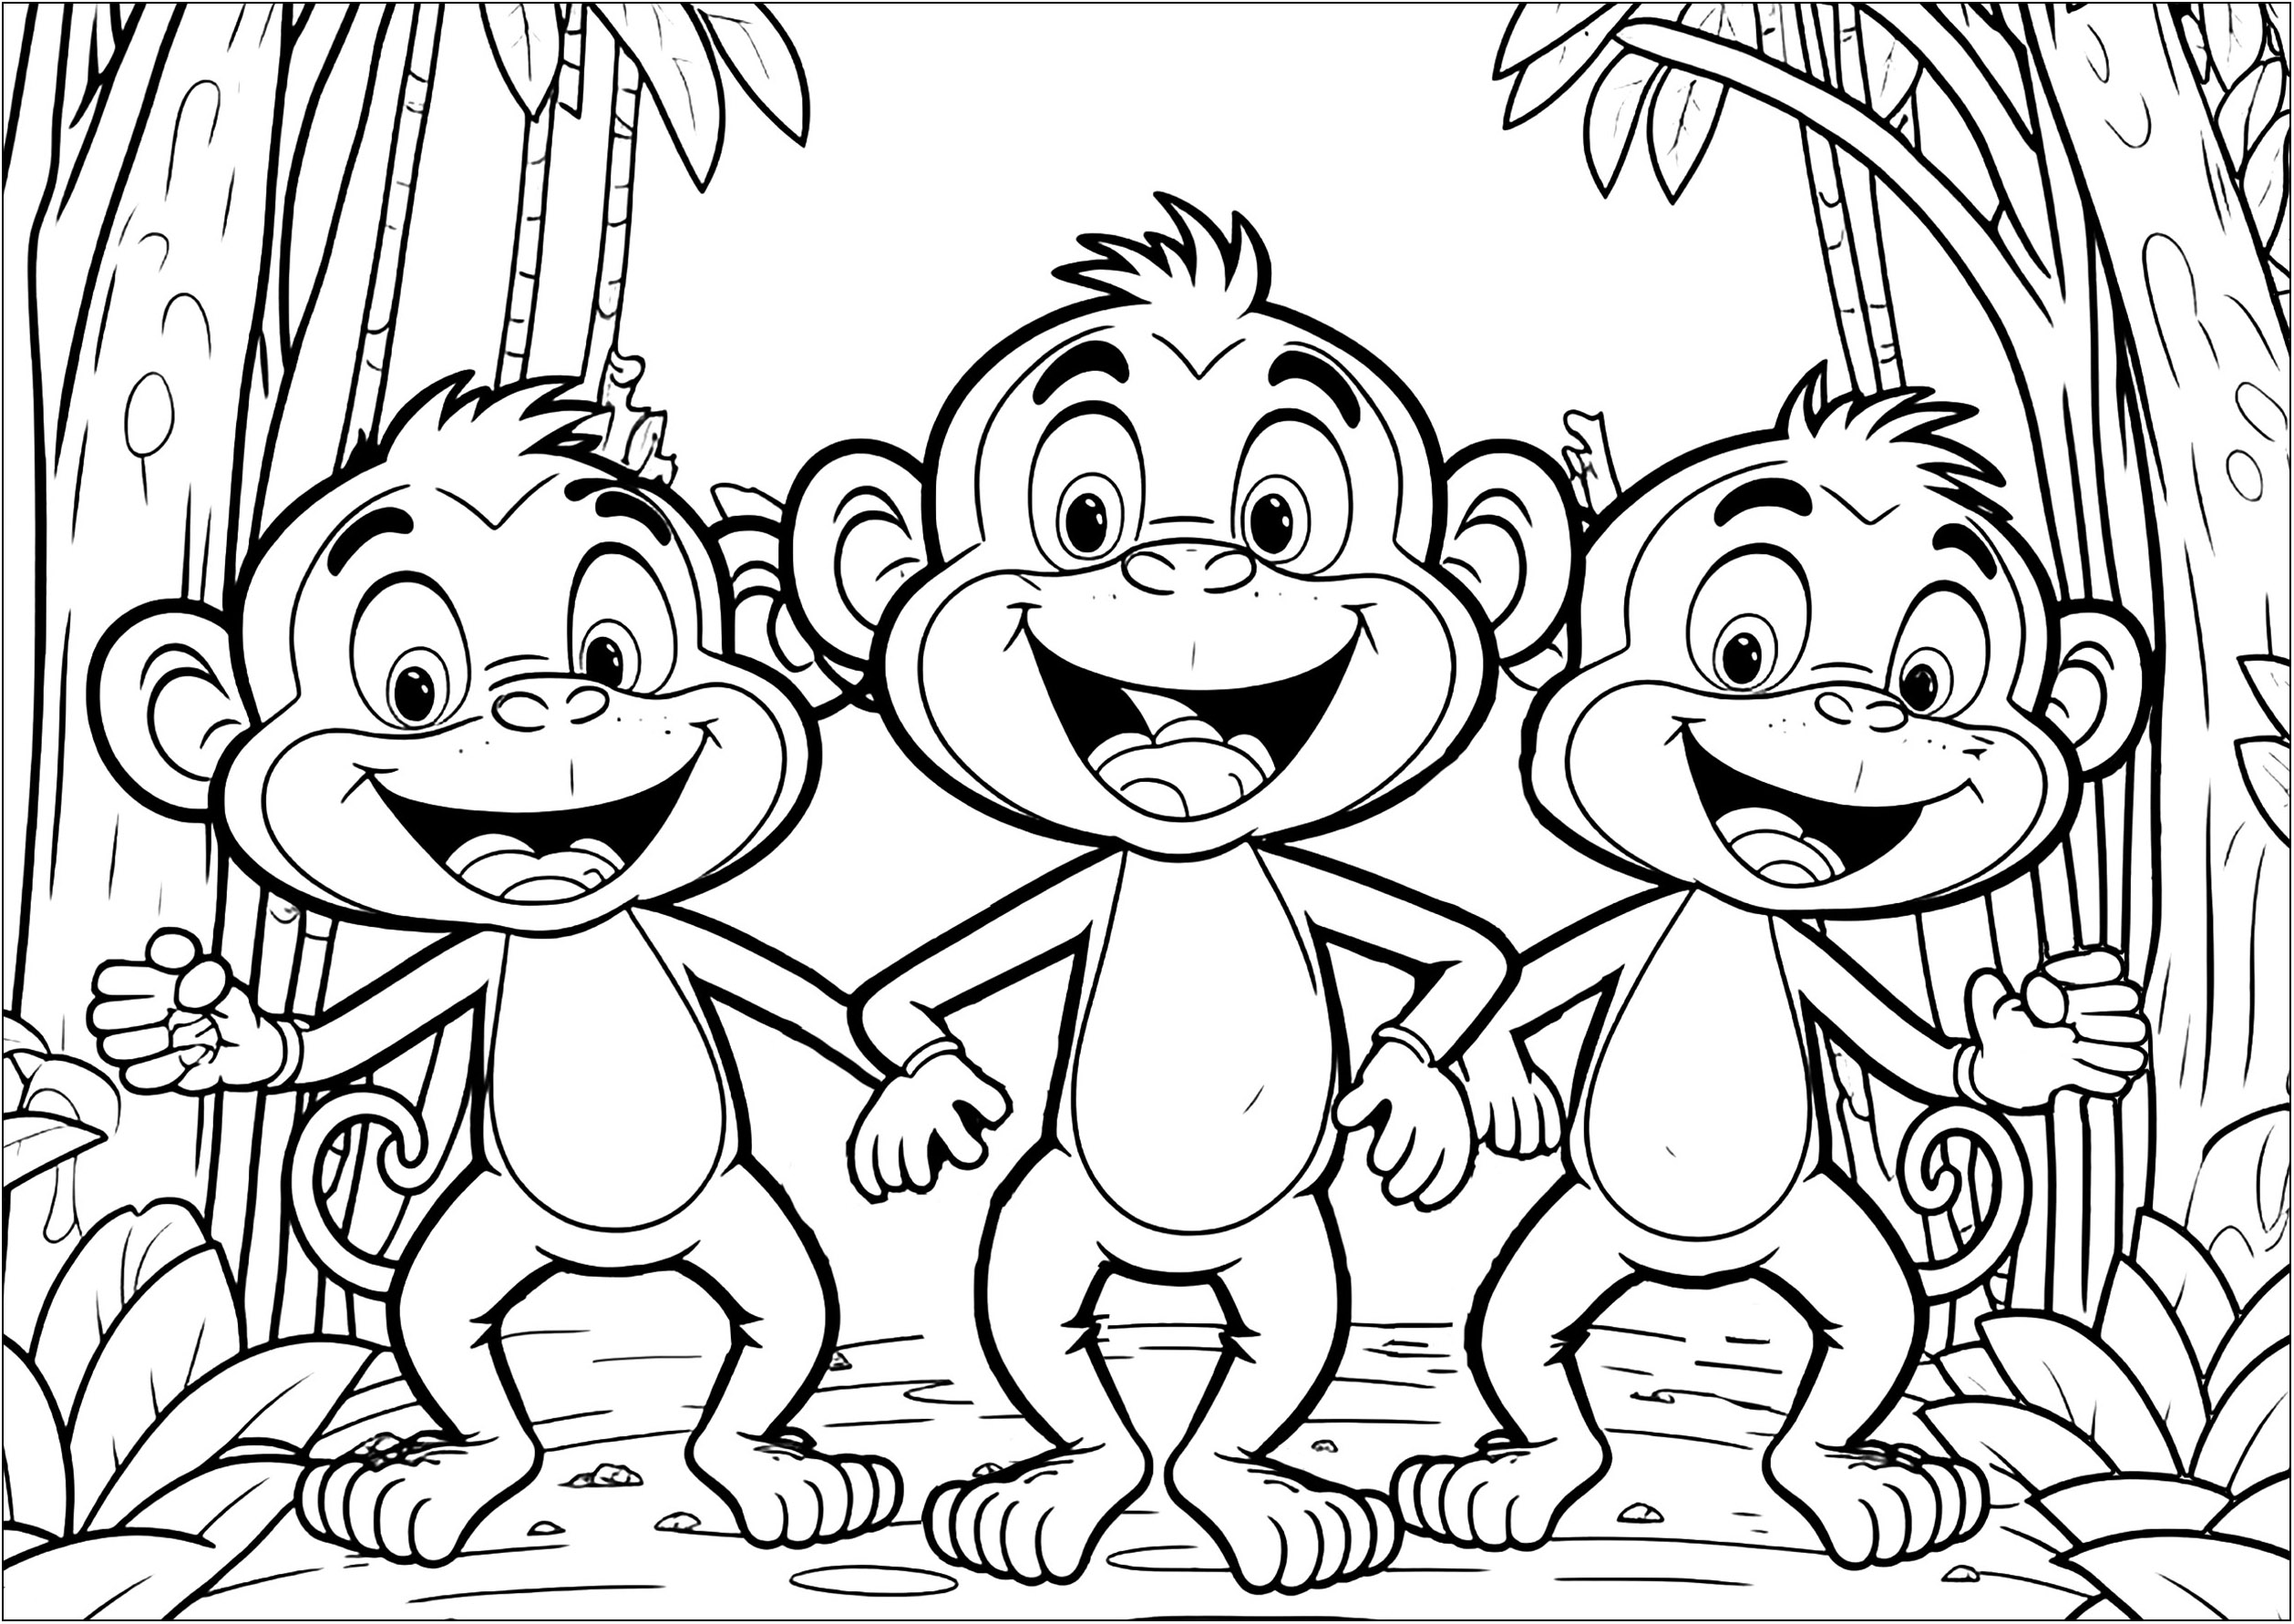 Trois singes rigolo à colorier avec des couleurs éclatantes. Les enfants pourront apprendre à mélanger des couleurs et à utiliser leur imagination pour créer une œuvre d'art unique.